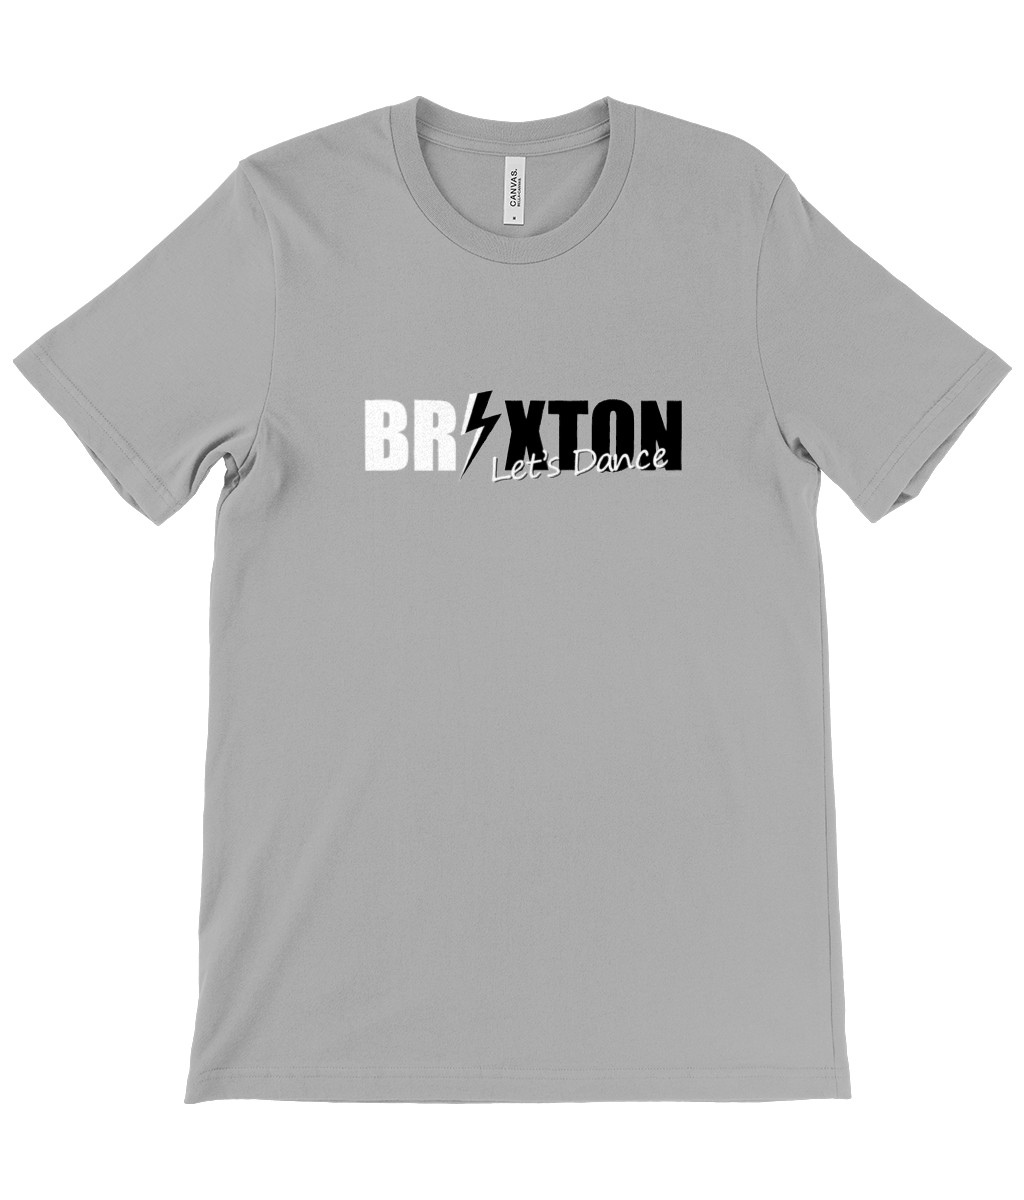 Let's Dance Brixton t-shirt grey